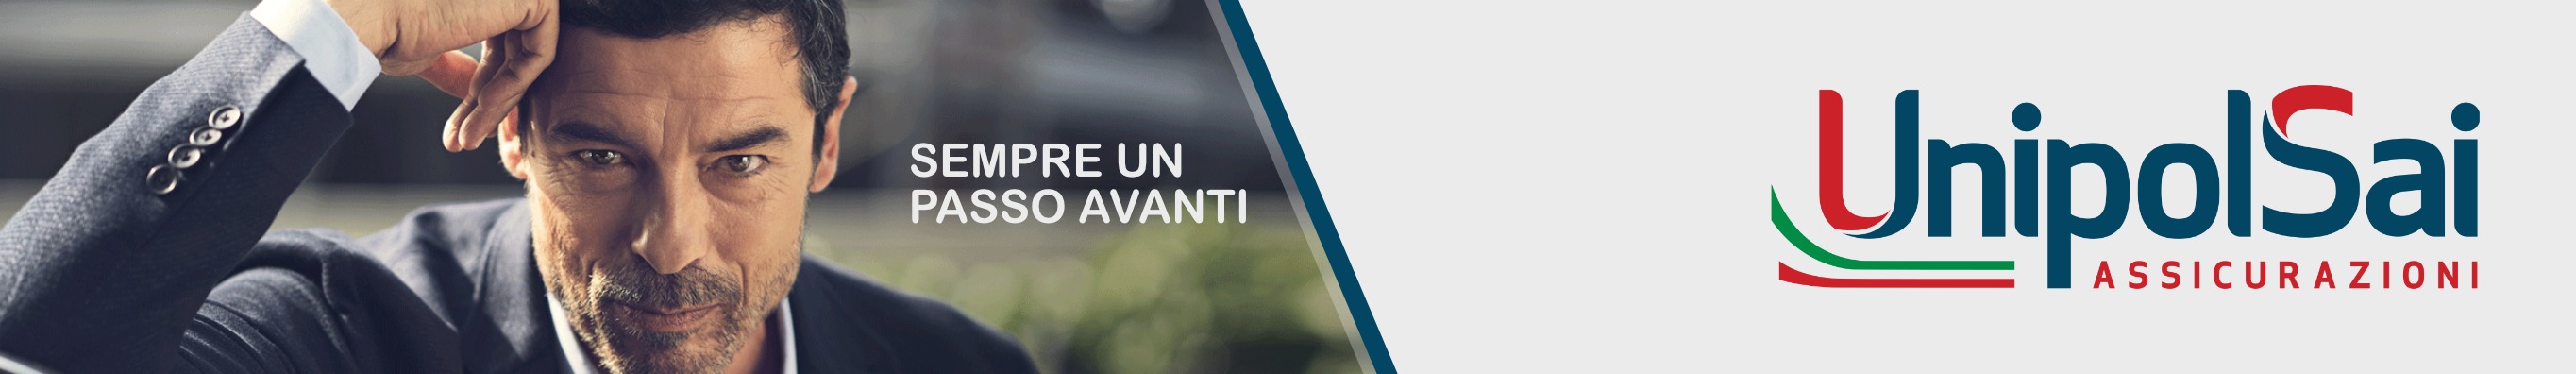 UnipolSai convenzionata con Cral Regione Campania